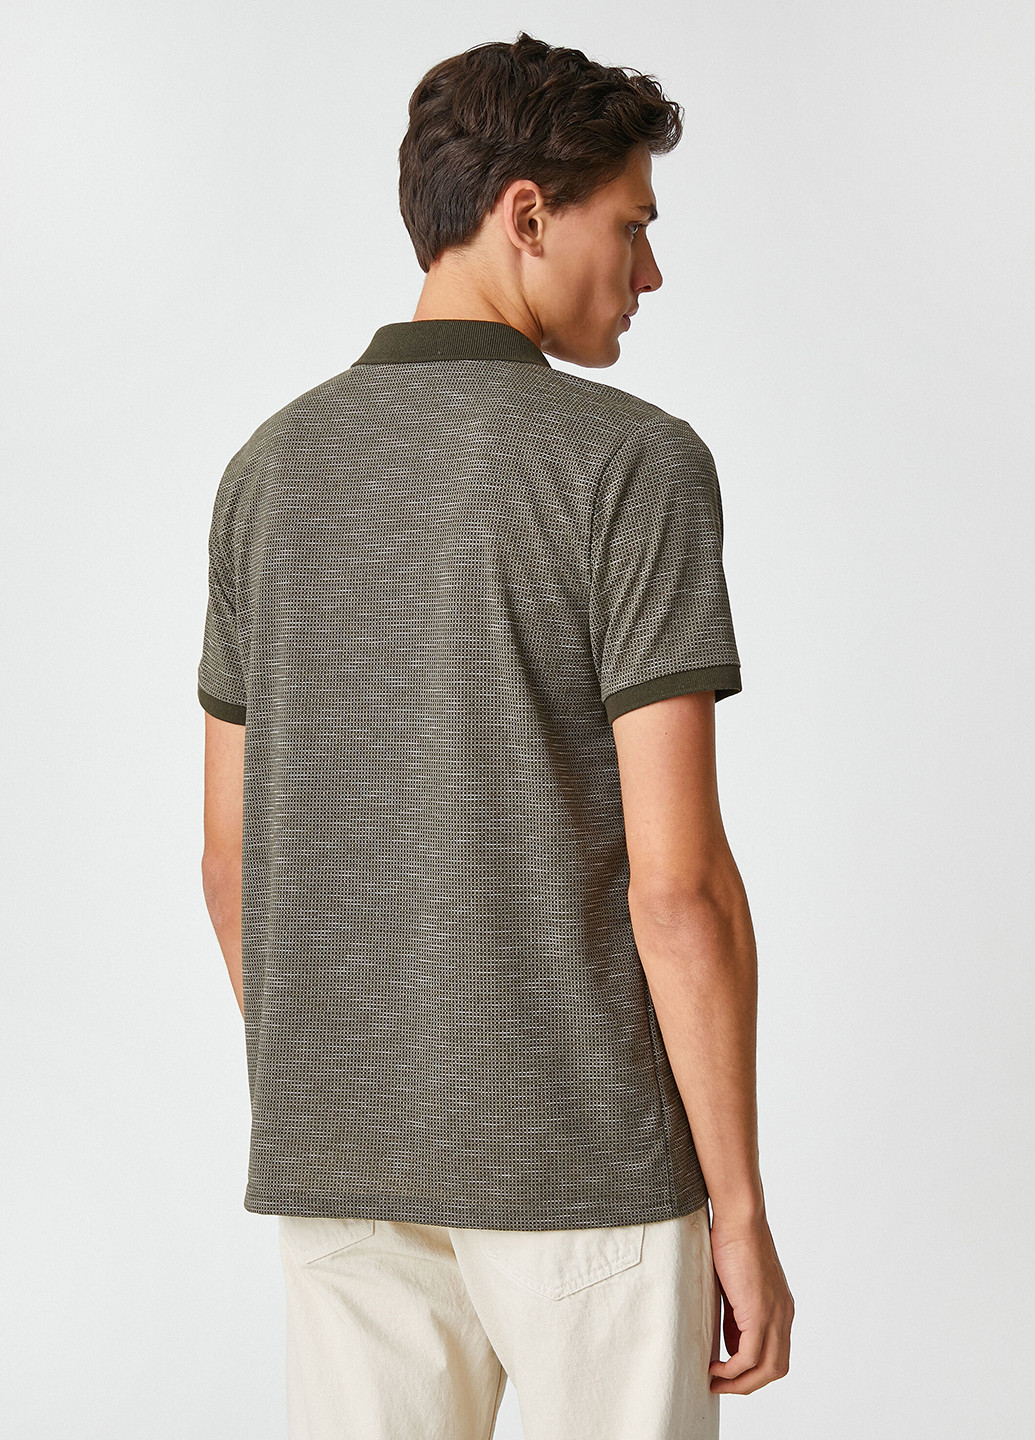 Оливковая (хаки) футболка-поло для мужчин KOTON меланжевая